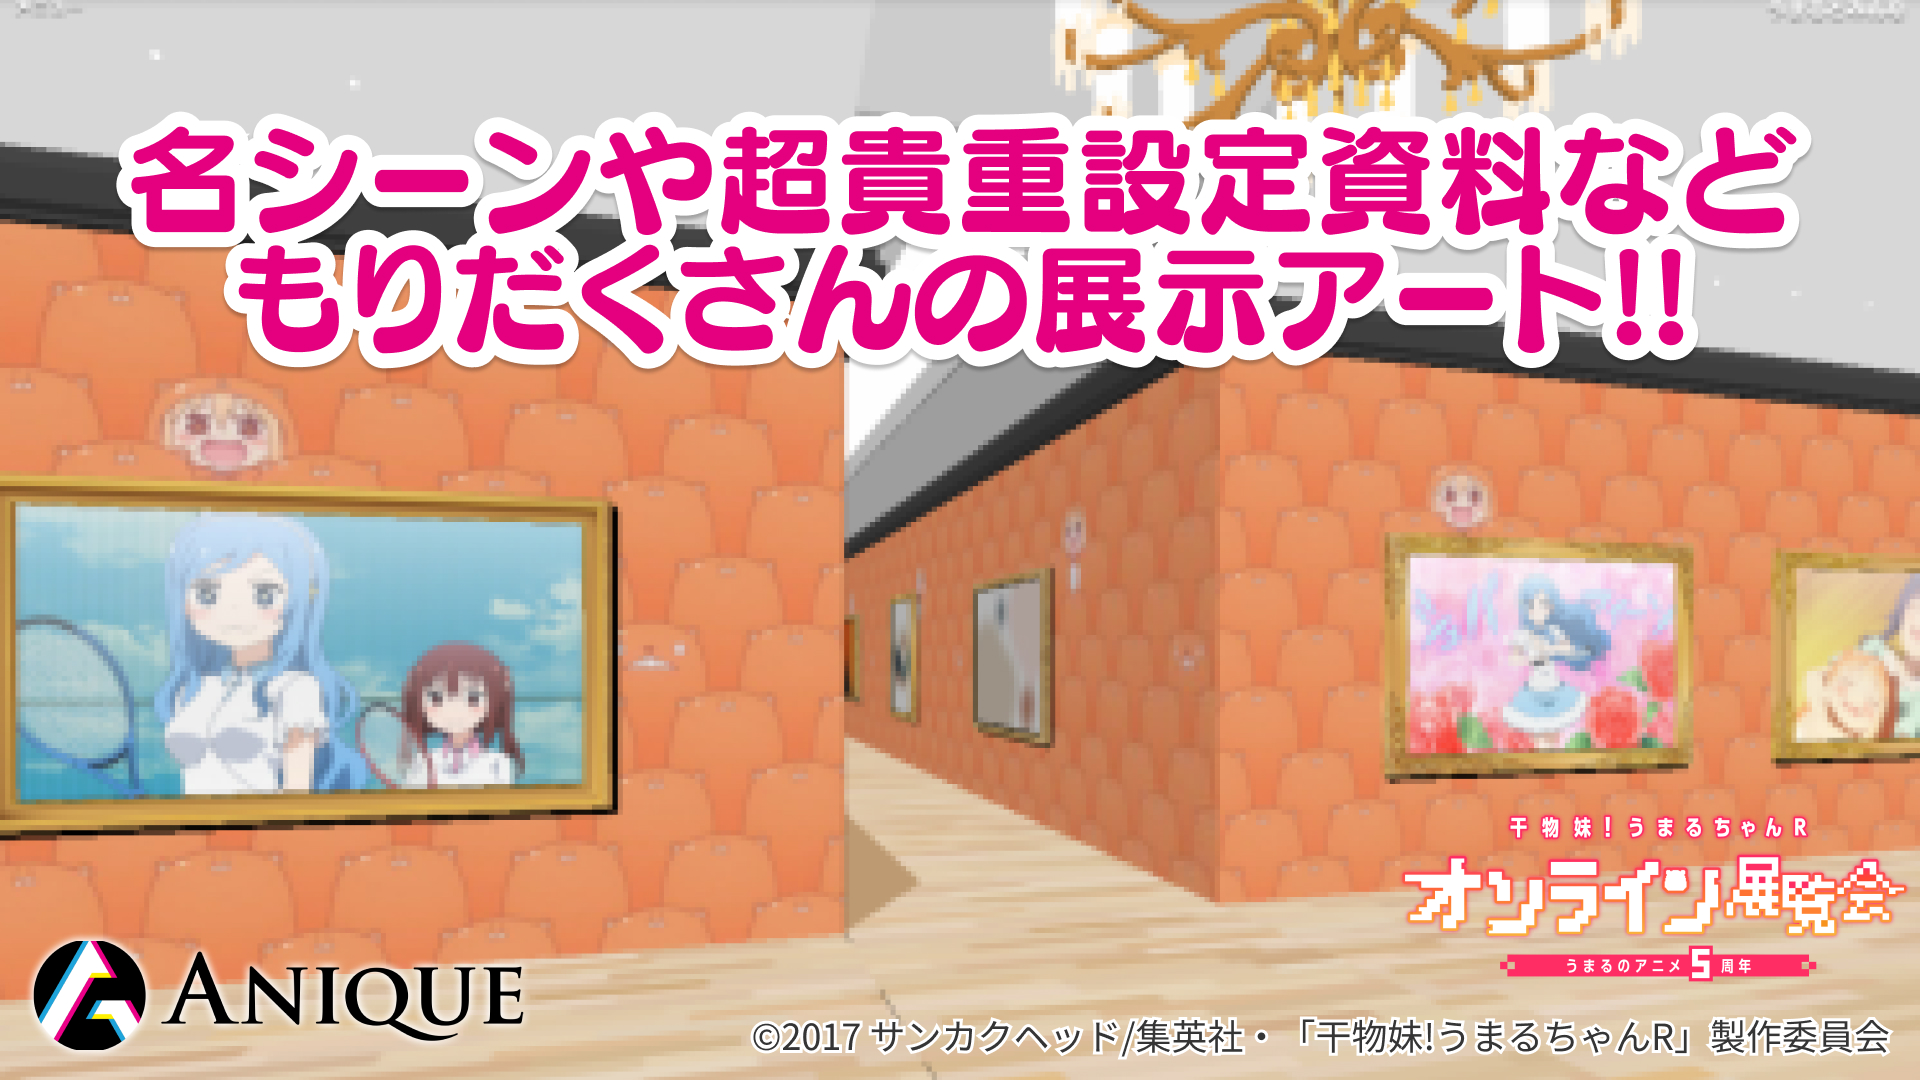 うまるちゃんアニメ5周年記念 干物妹 うまるちゃんr オンライン展覧会 開催 Anique株式会社のプレスリリース